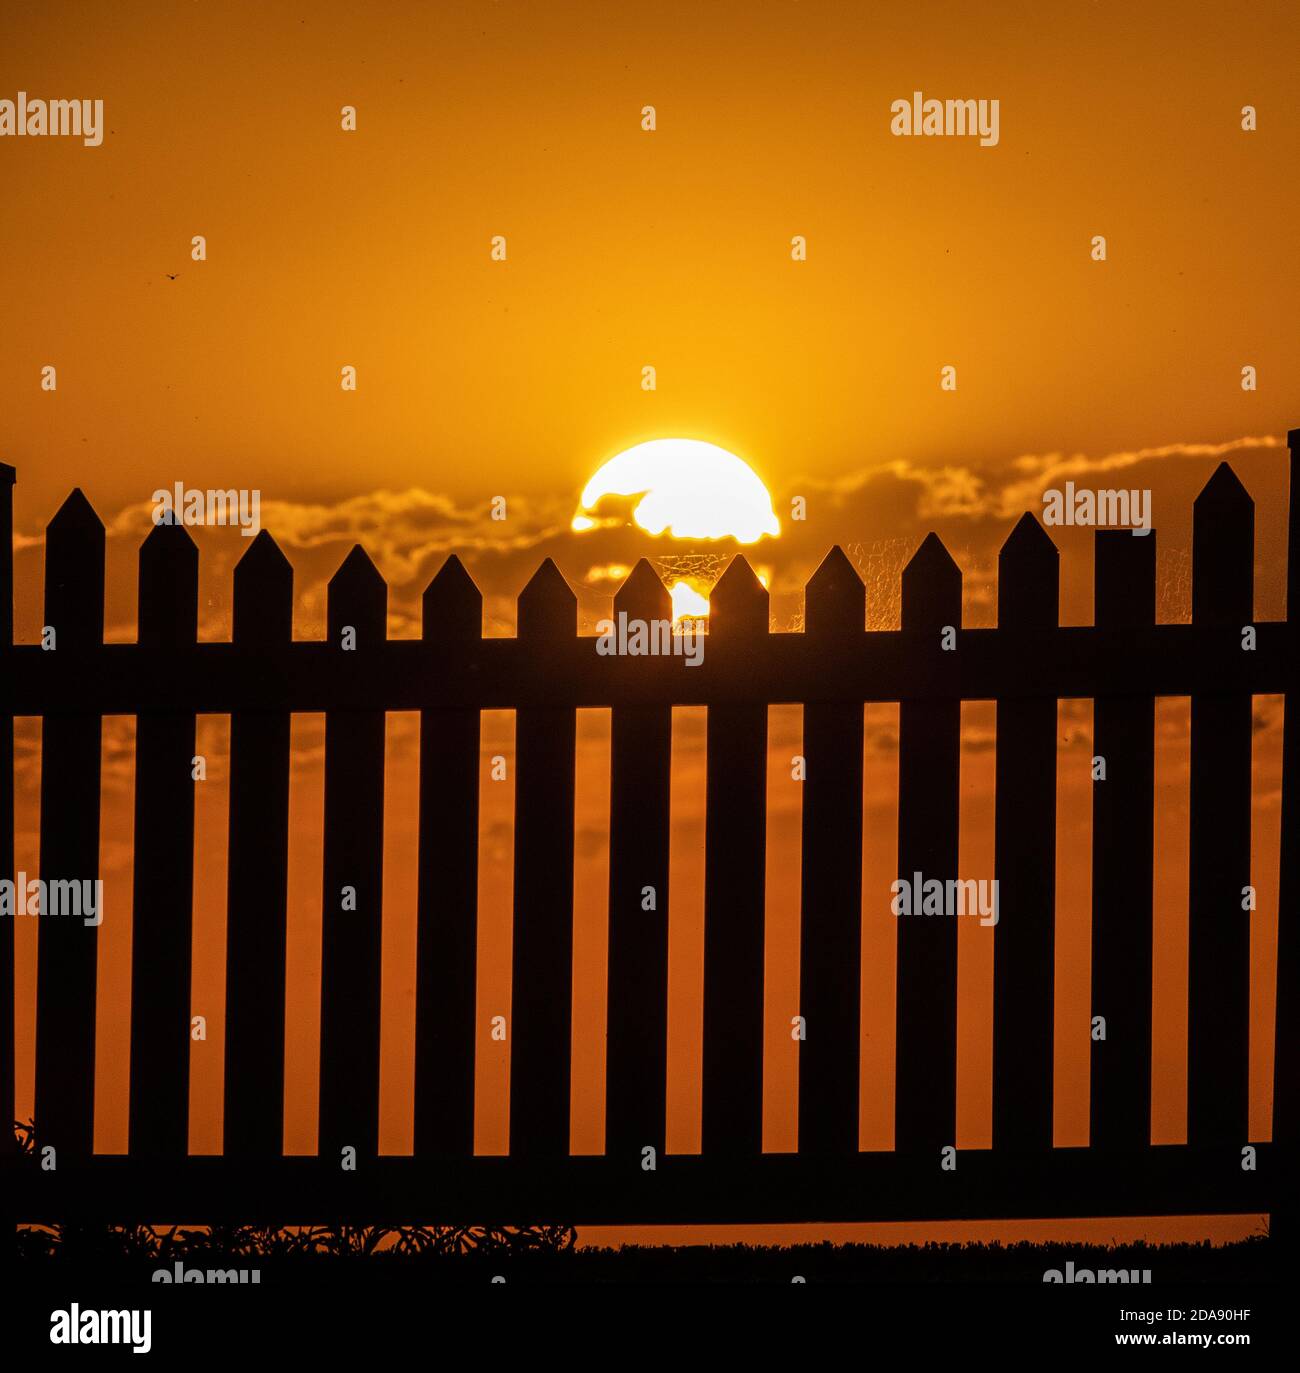 Puesta de sol y una valla de piquete. Foto genérica de la puesta de sol a través de una valla de piquete. Foto de stock